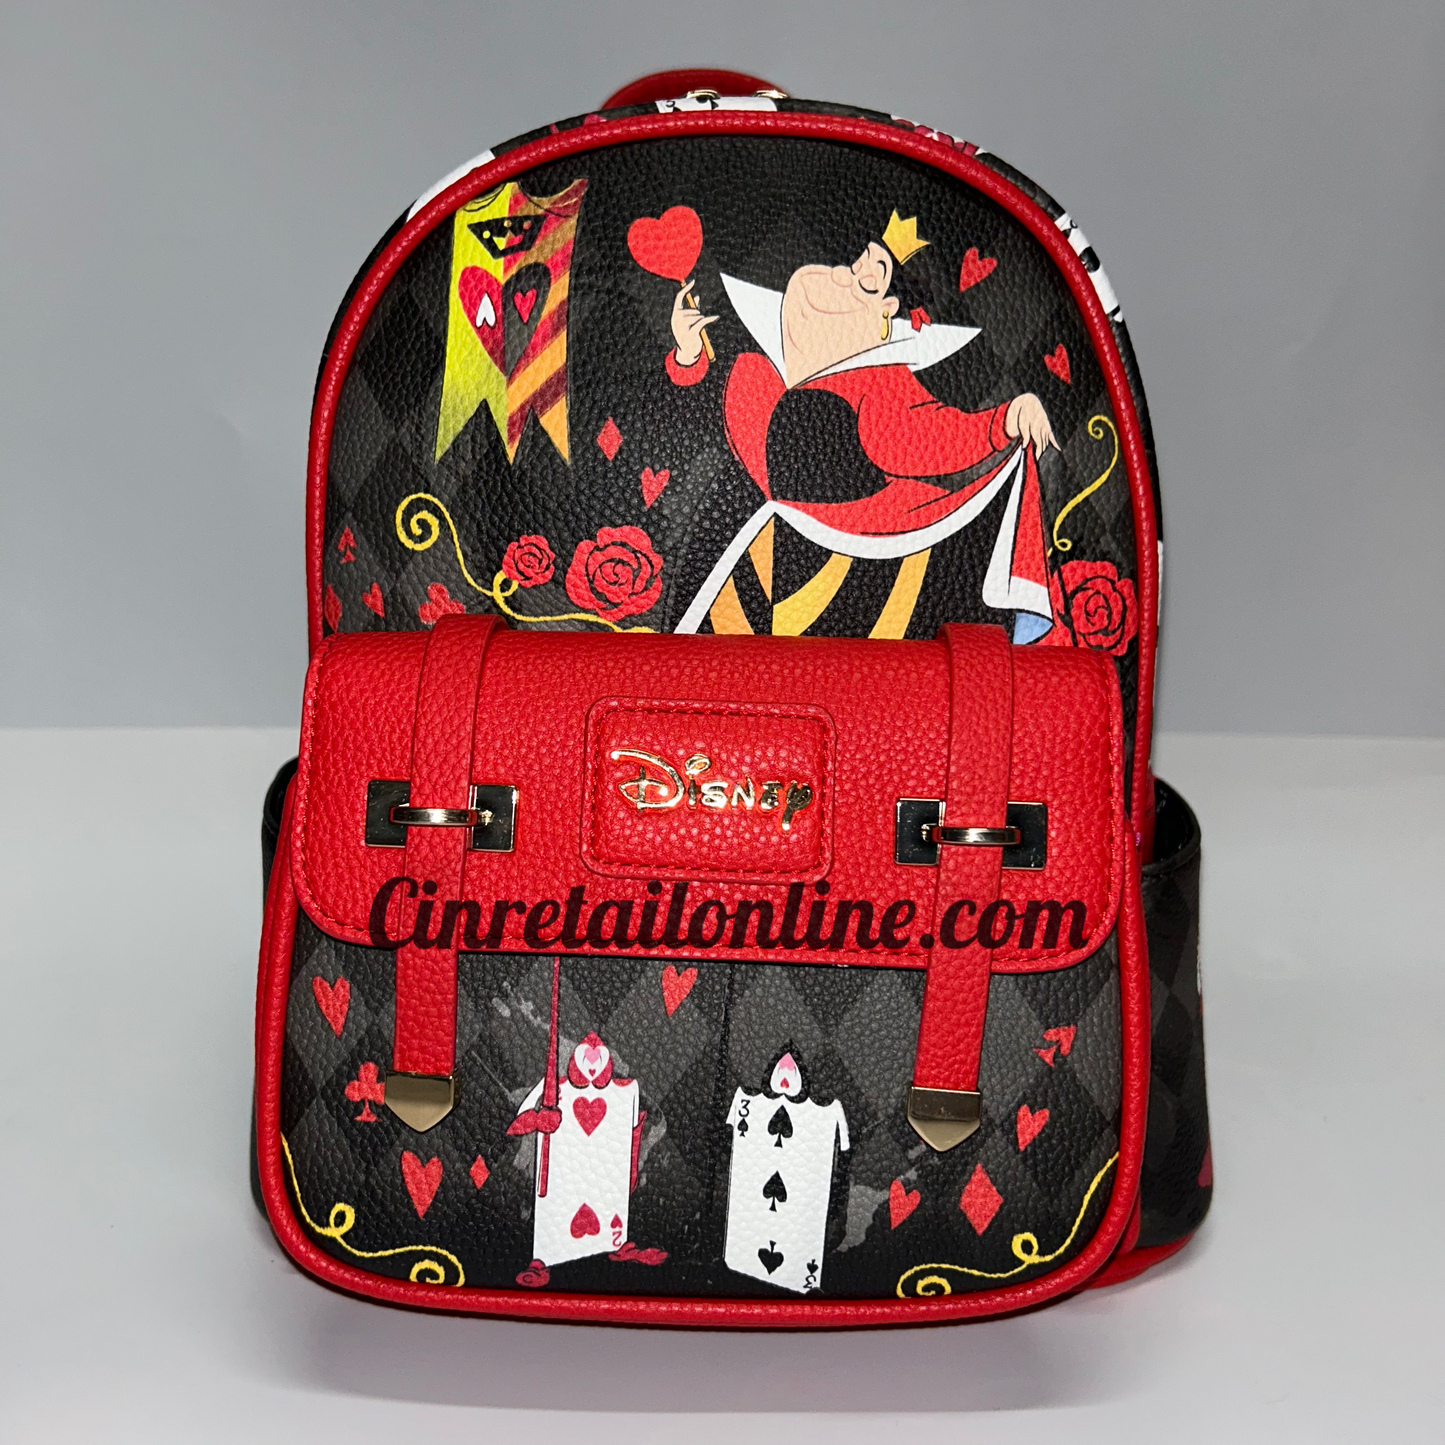 Queen of hearts Disney backpack